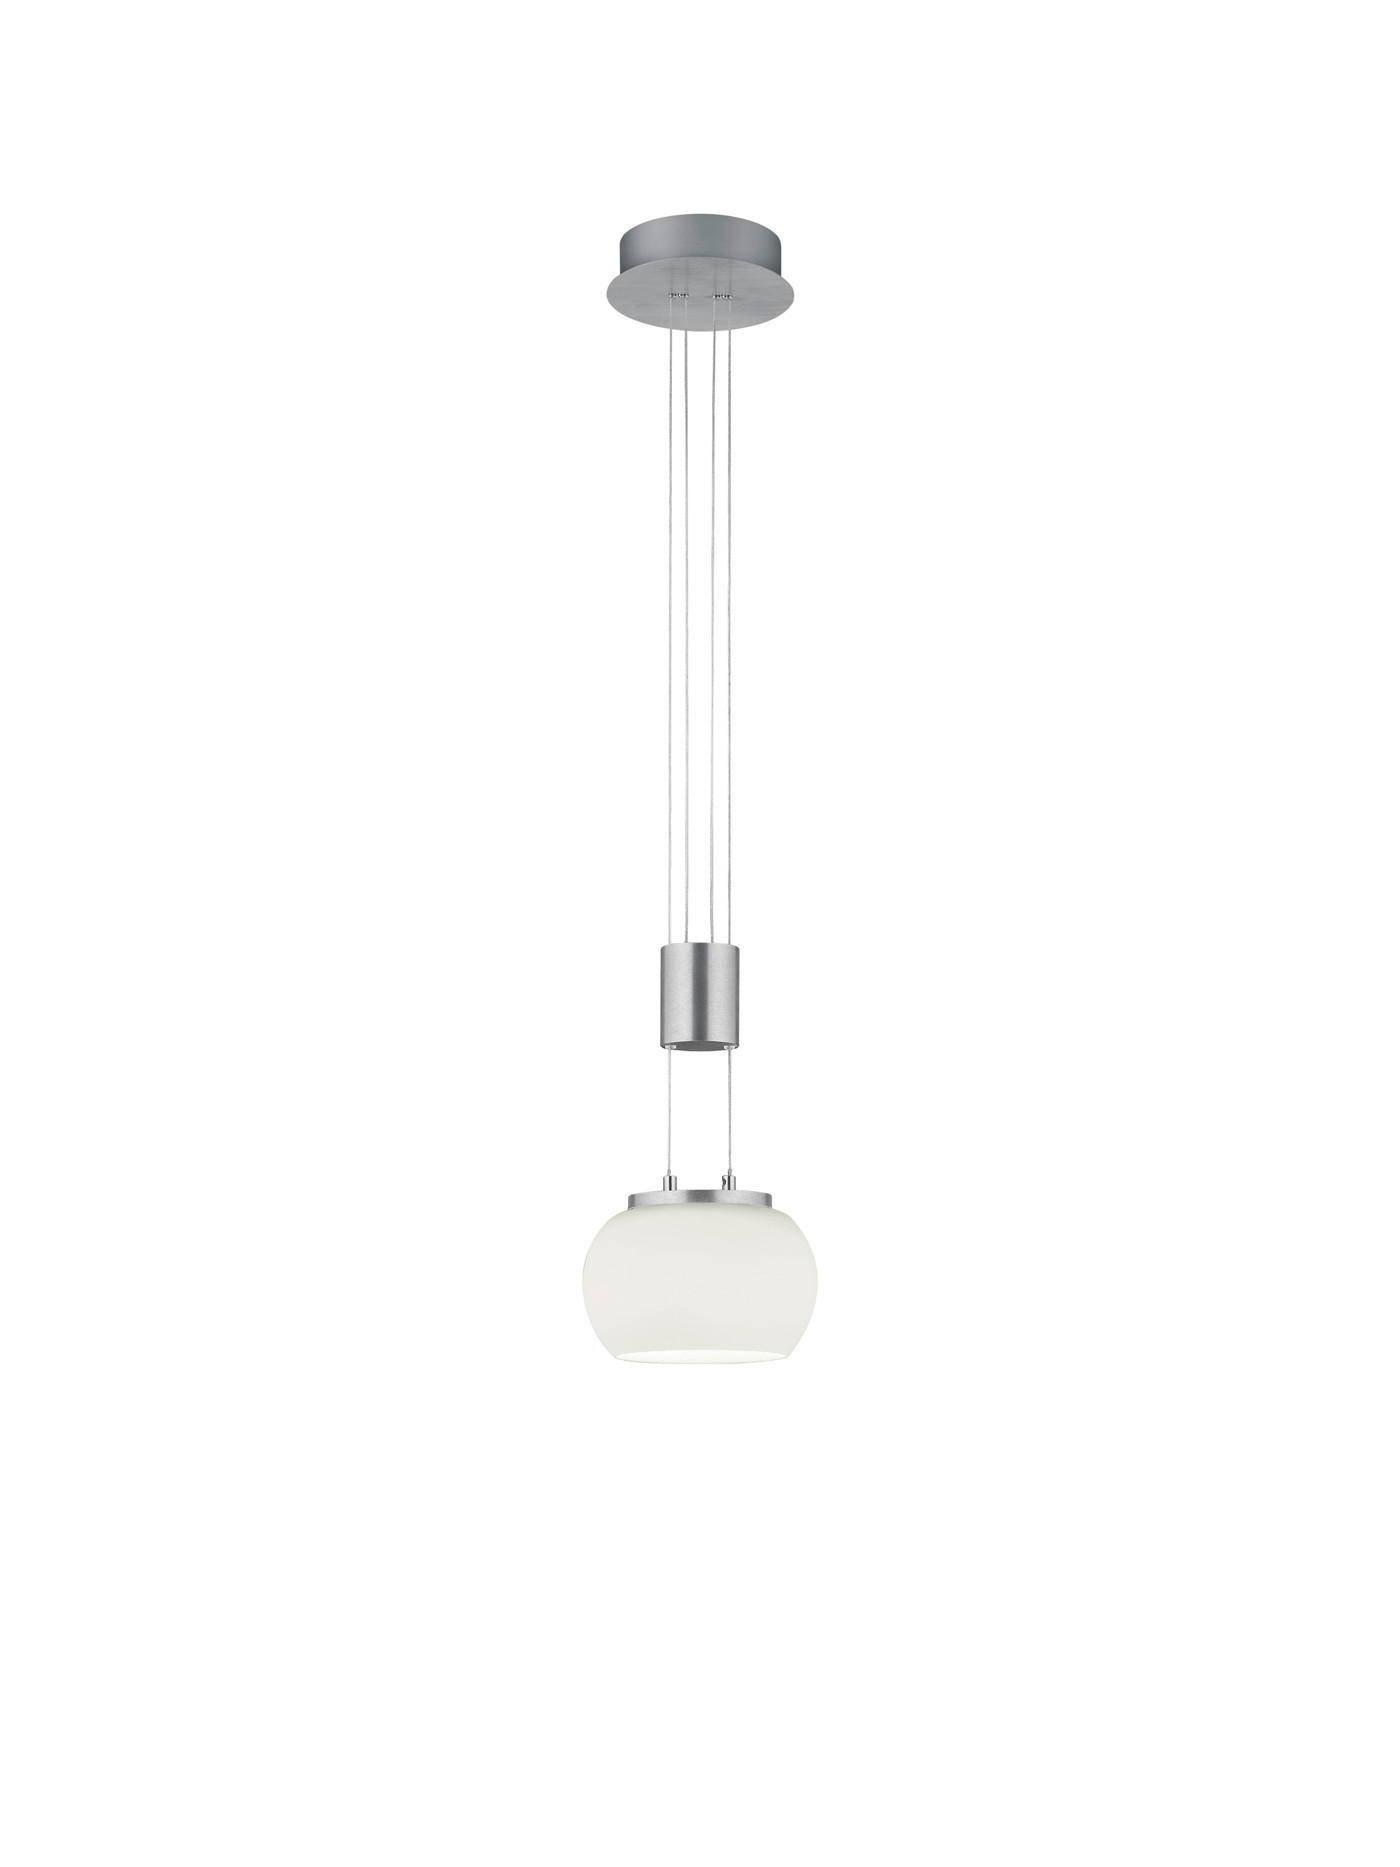 LED-HÄNGELEUCHTE Madison 18/150 cm   - Alufarben/Weiß, Design, Glas/Metall (18/150cm) - Trio Leuchten